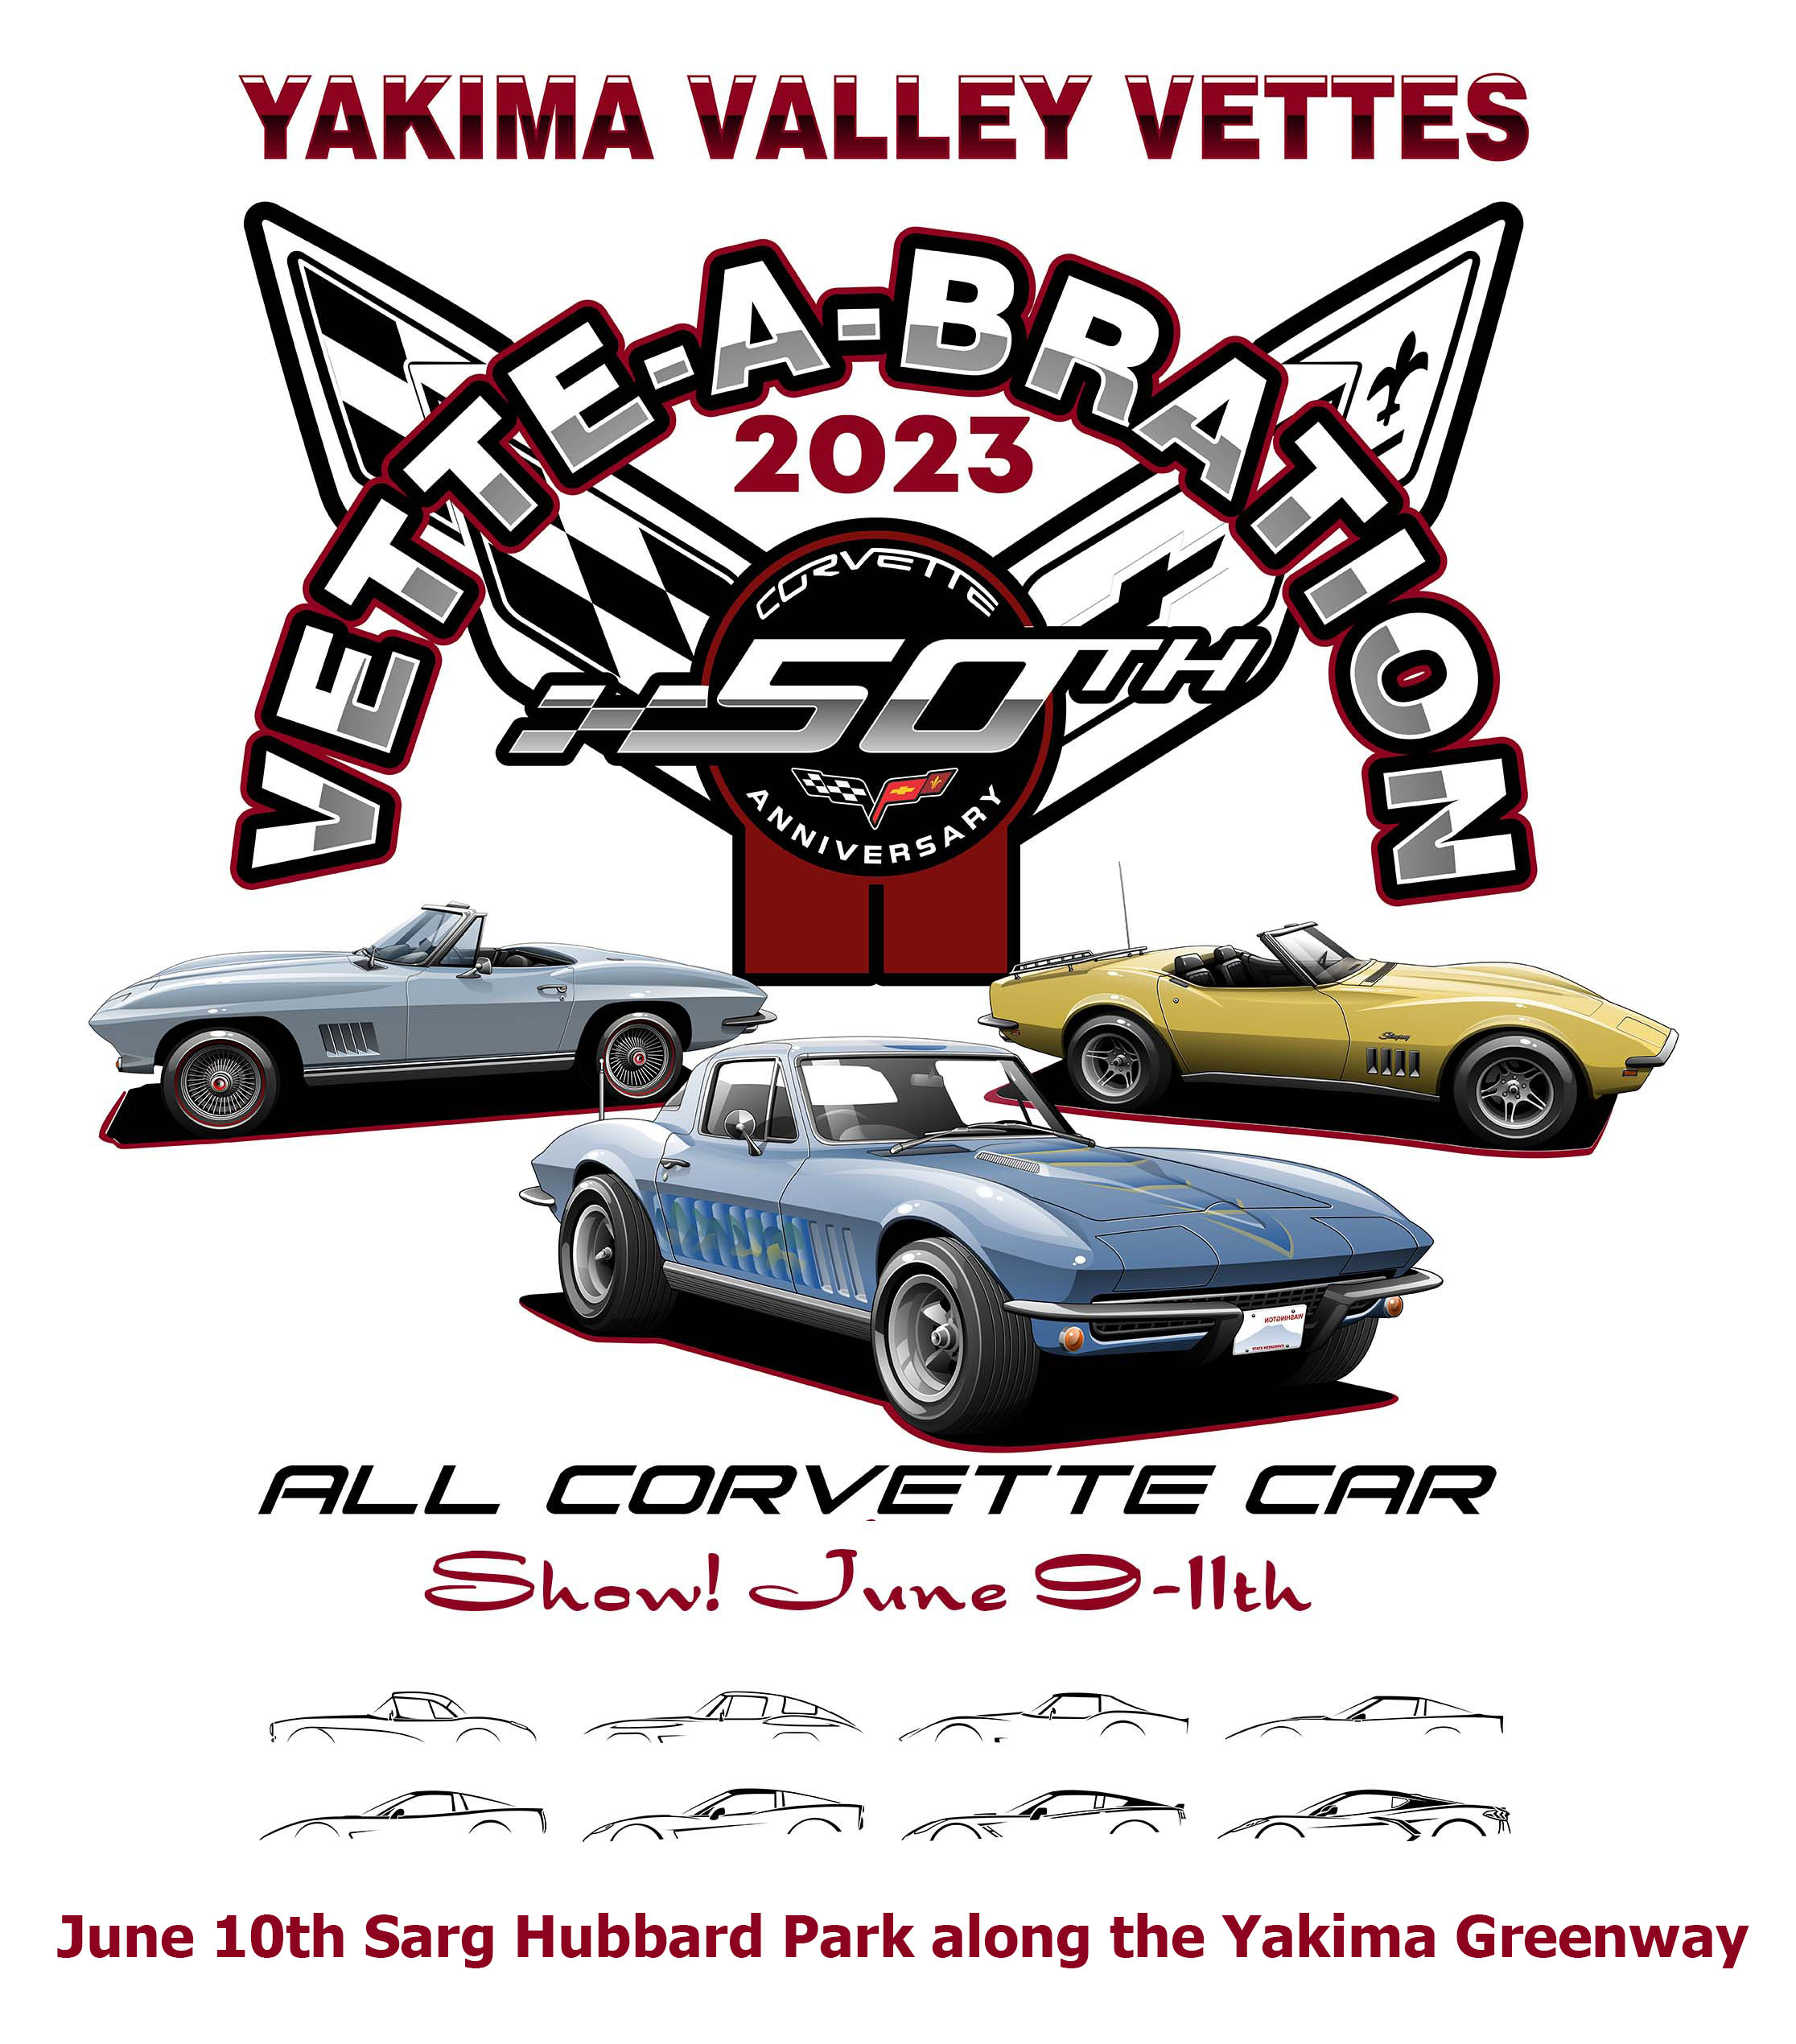 Vette-A-Bration All Corvette Car Show